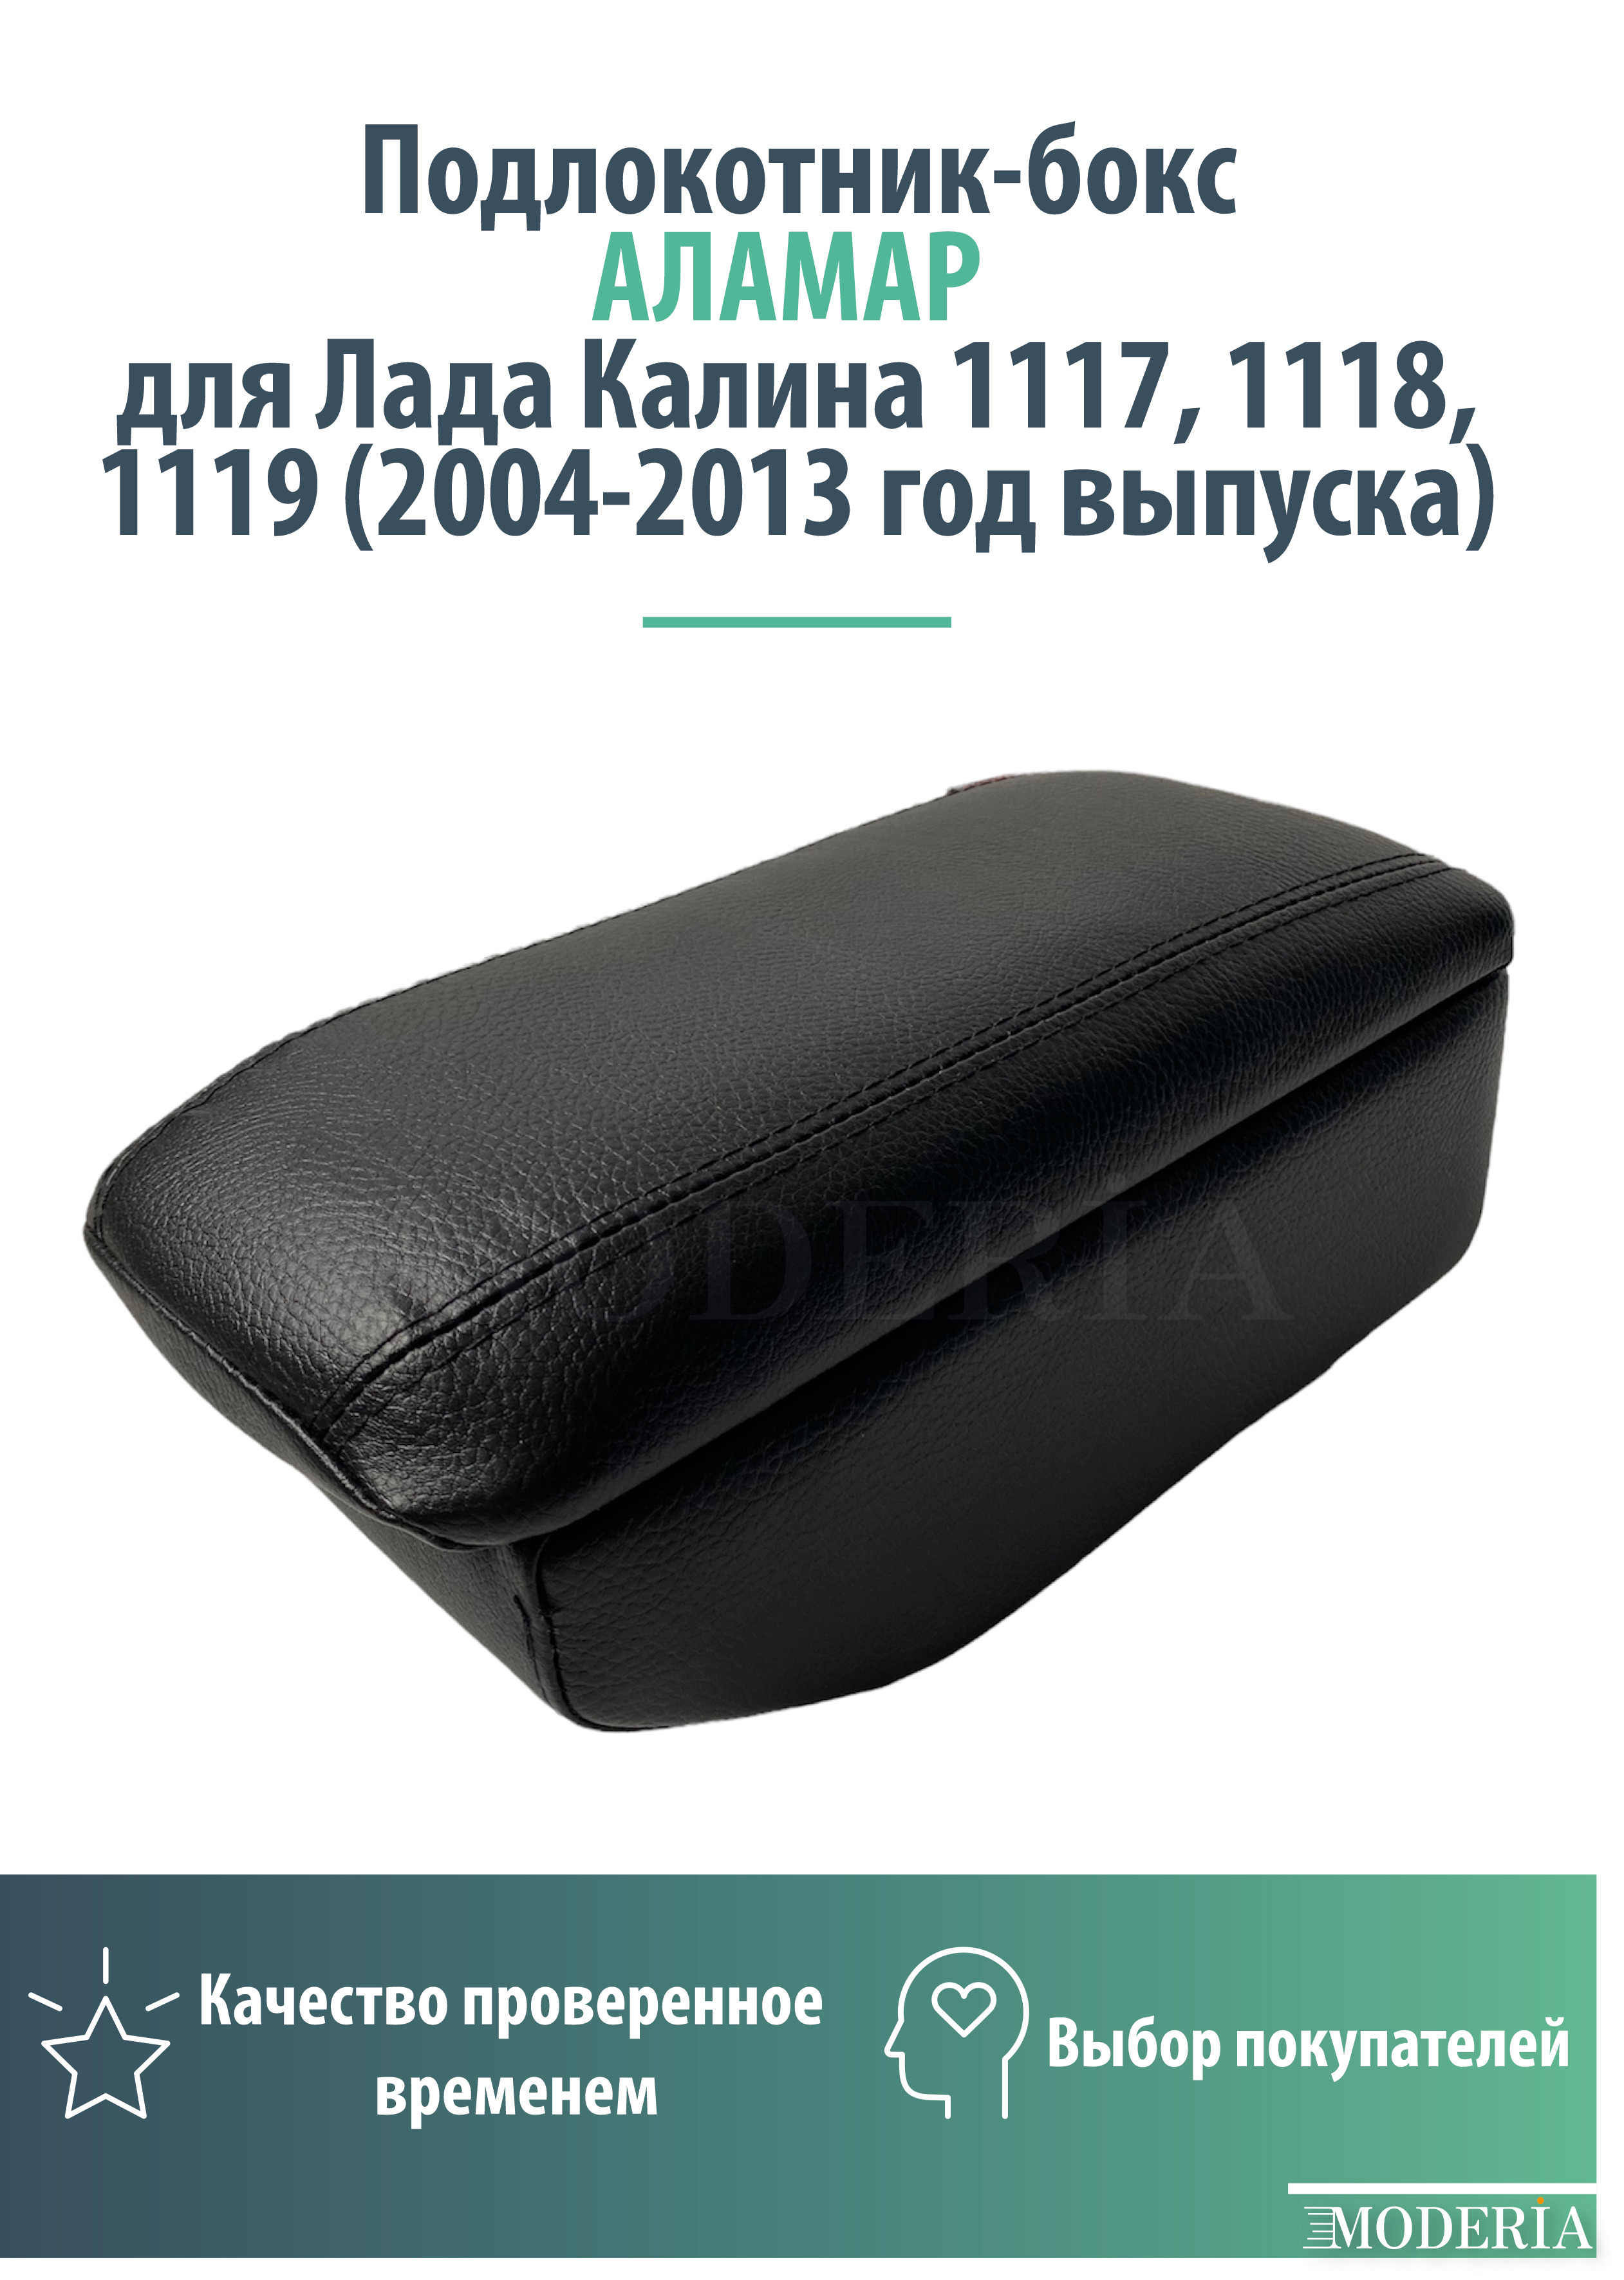 Купить подлокотник Lada Kalina II () из экокожи в интернет-магазине 